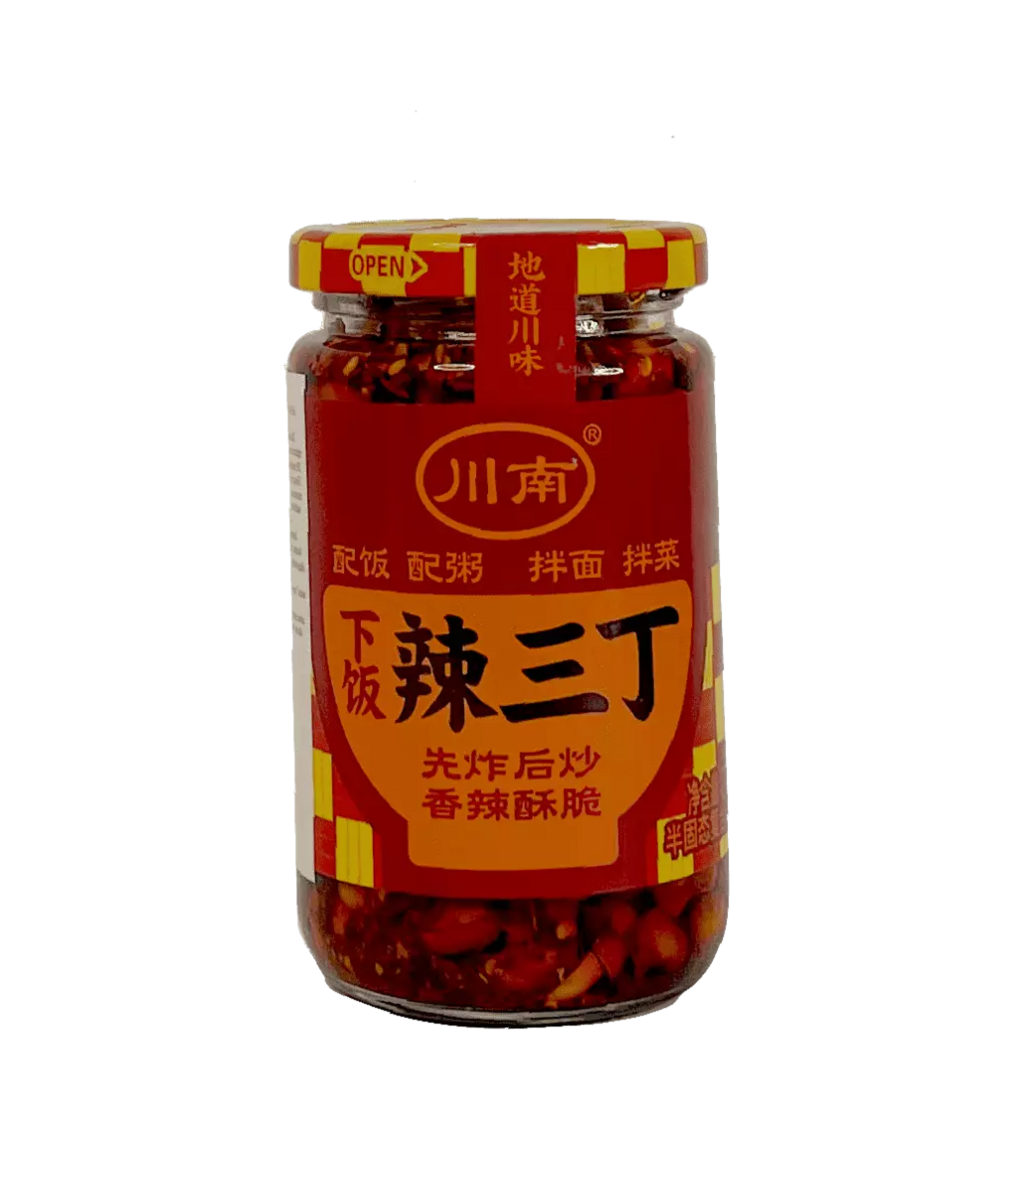 下饭 辣三丁 含花生 270g 川南 中国